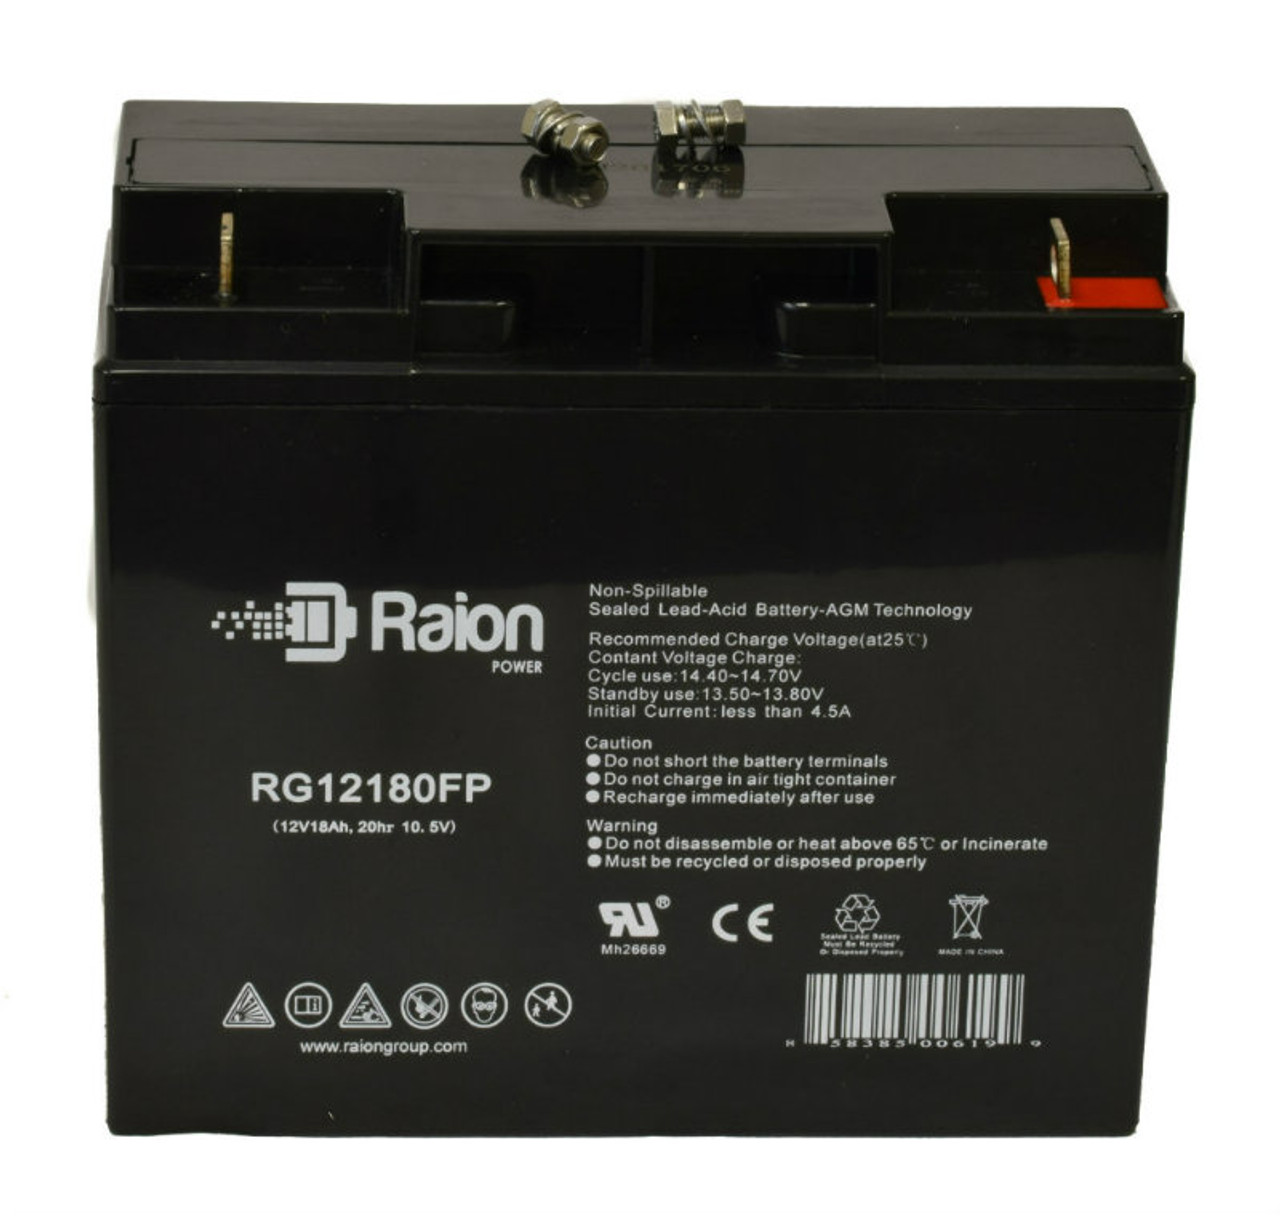 Raion Power RG12180FP 12V 18Ah Lead Acid Battery for Constant Power AGMD12180